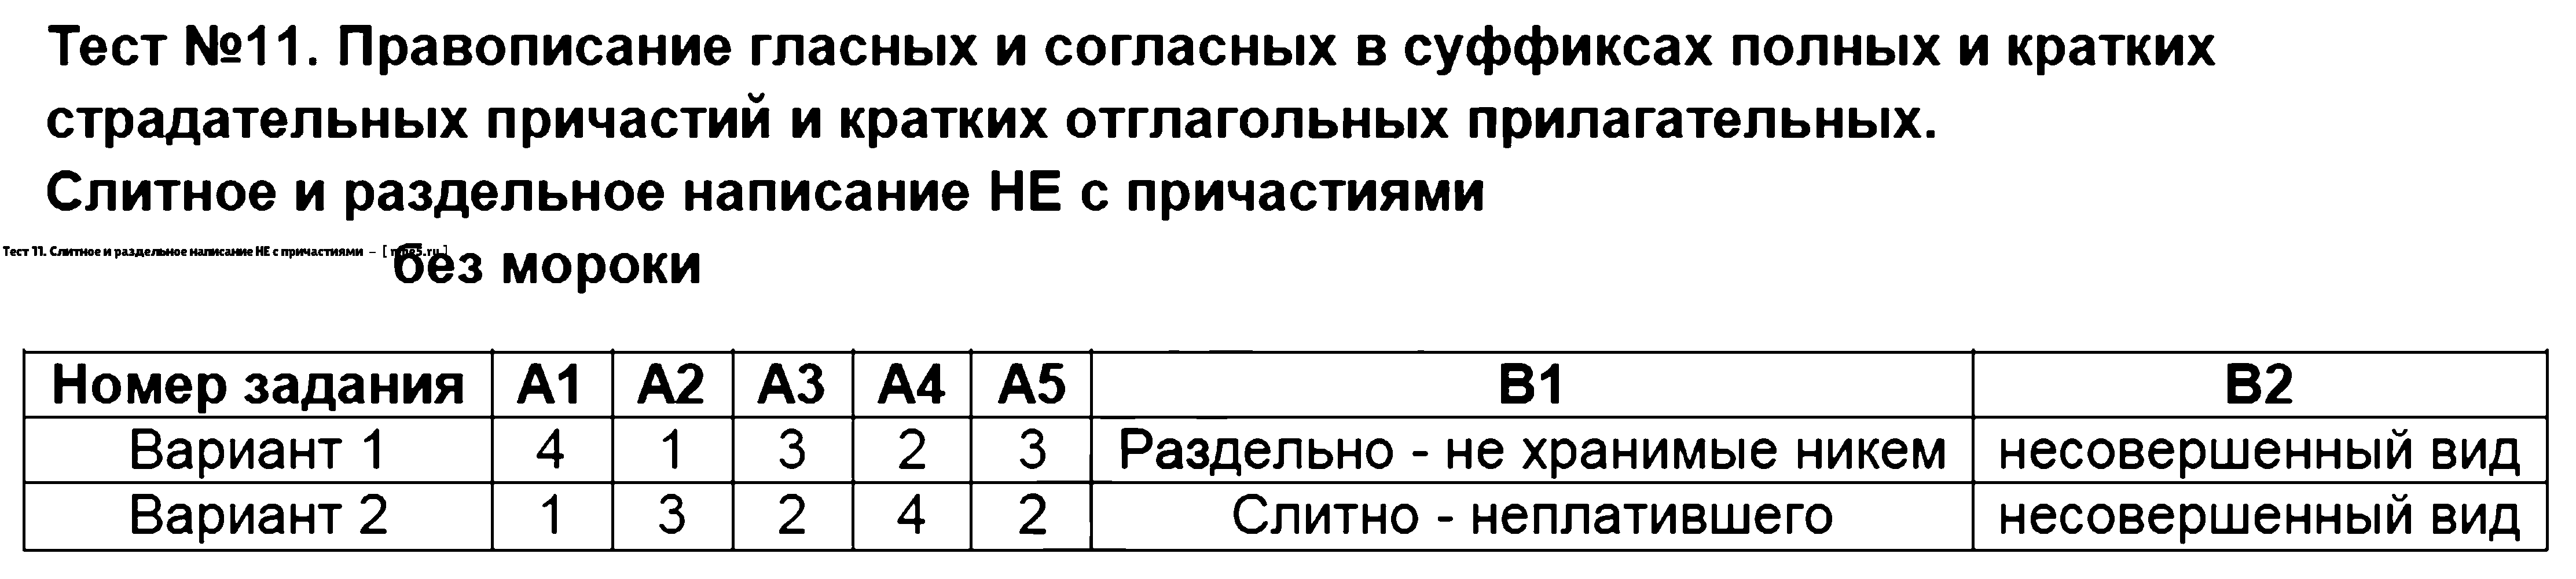 ГДЗ Русский язык 7 класс - Тест 11. Слитное и раздельное написание НЕ с причастиями